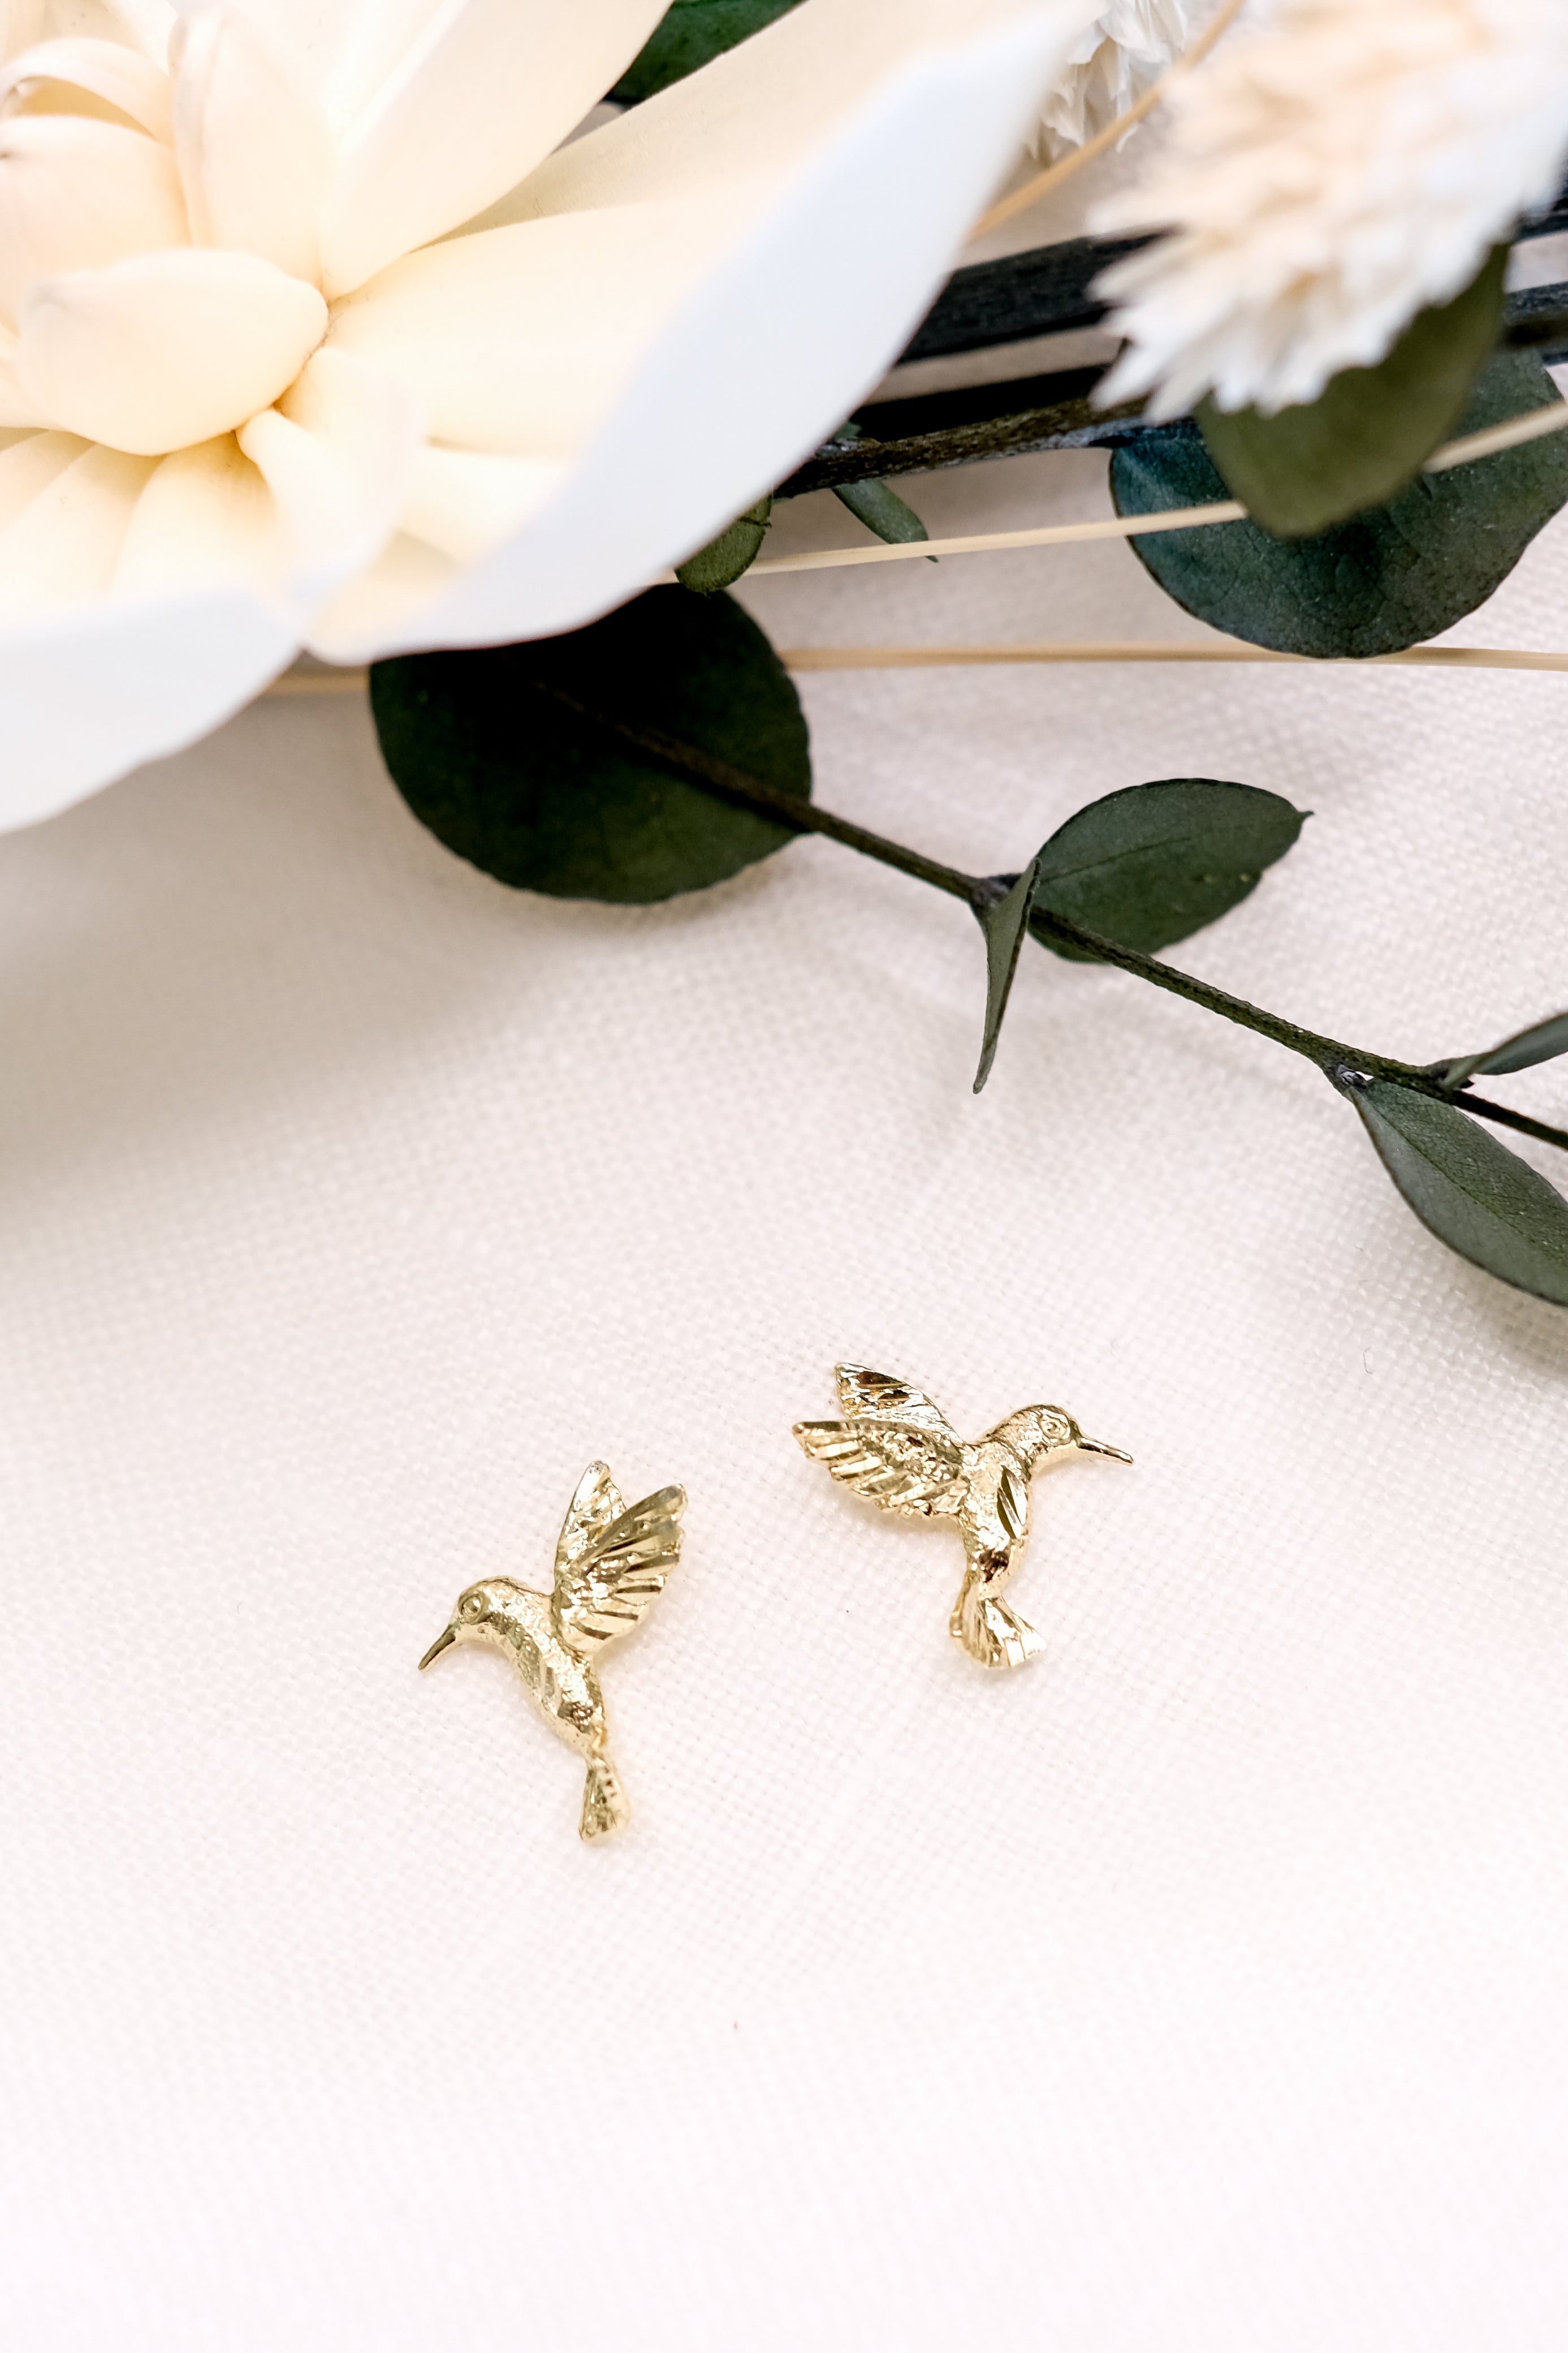 hummingbird earrings, hummingbird earring set, gold hummingbird earrings, gold hummingbird studs